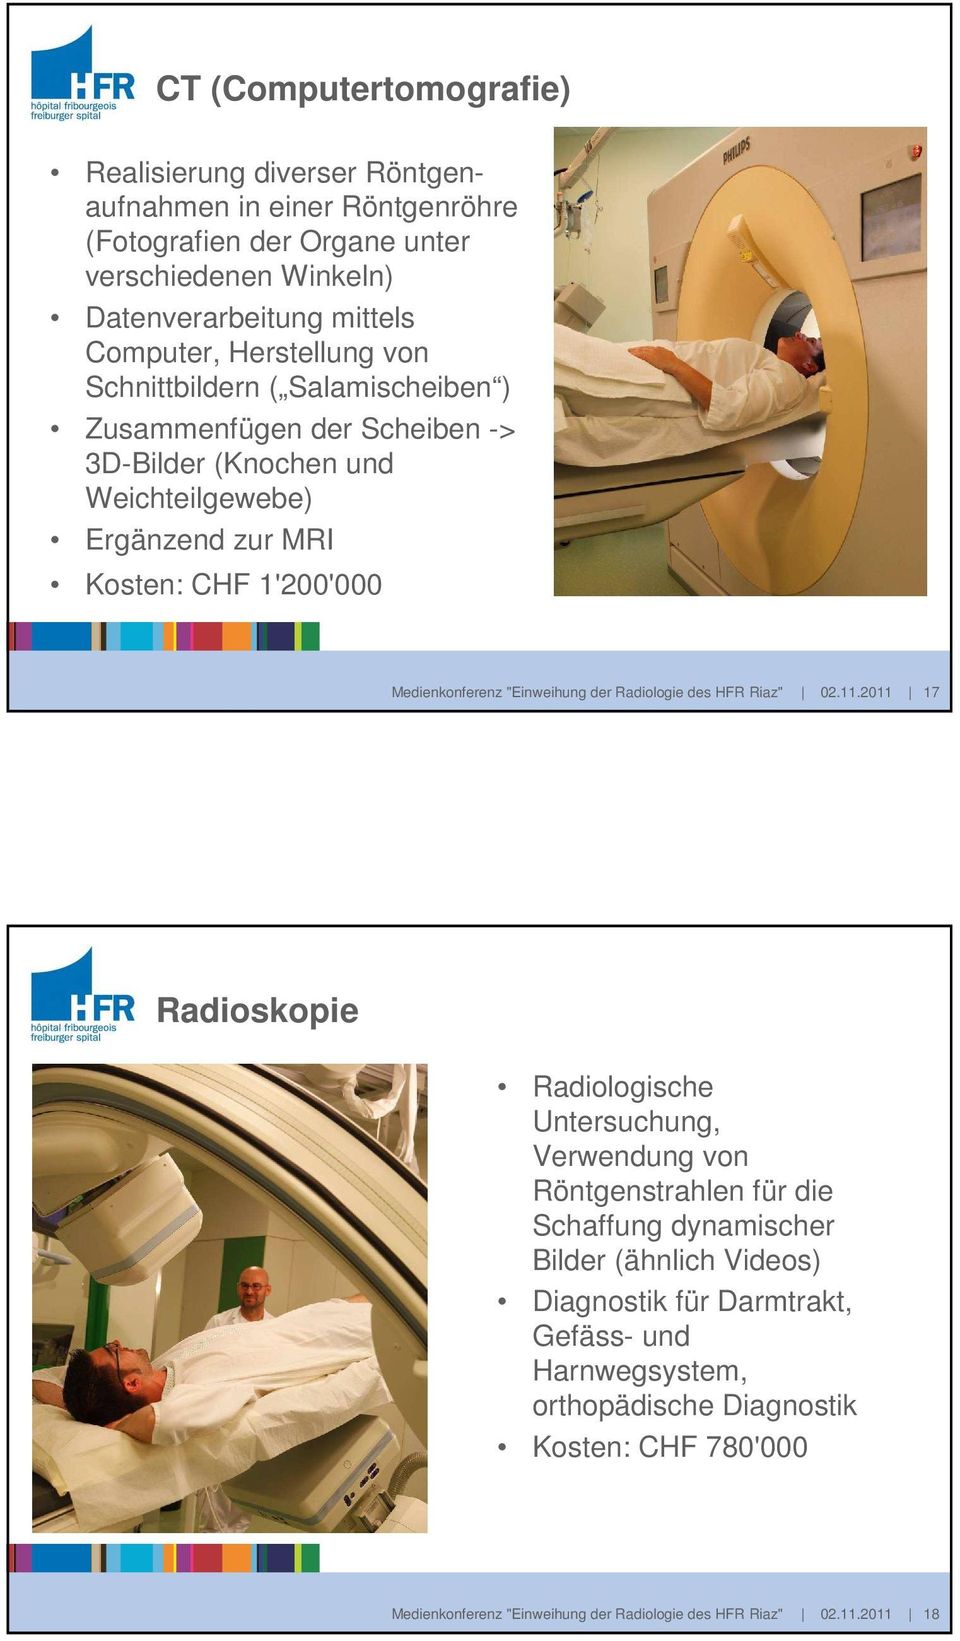 Medienkonferenz "Einweihung der Radiologie des HFR Riaz" 02.11.